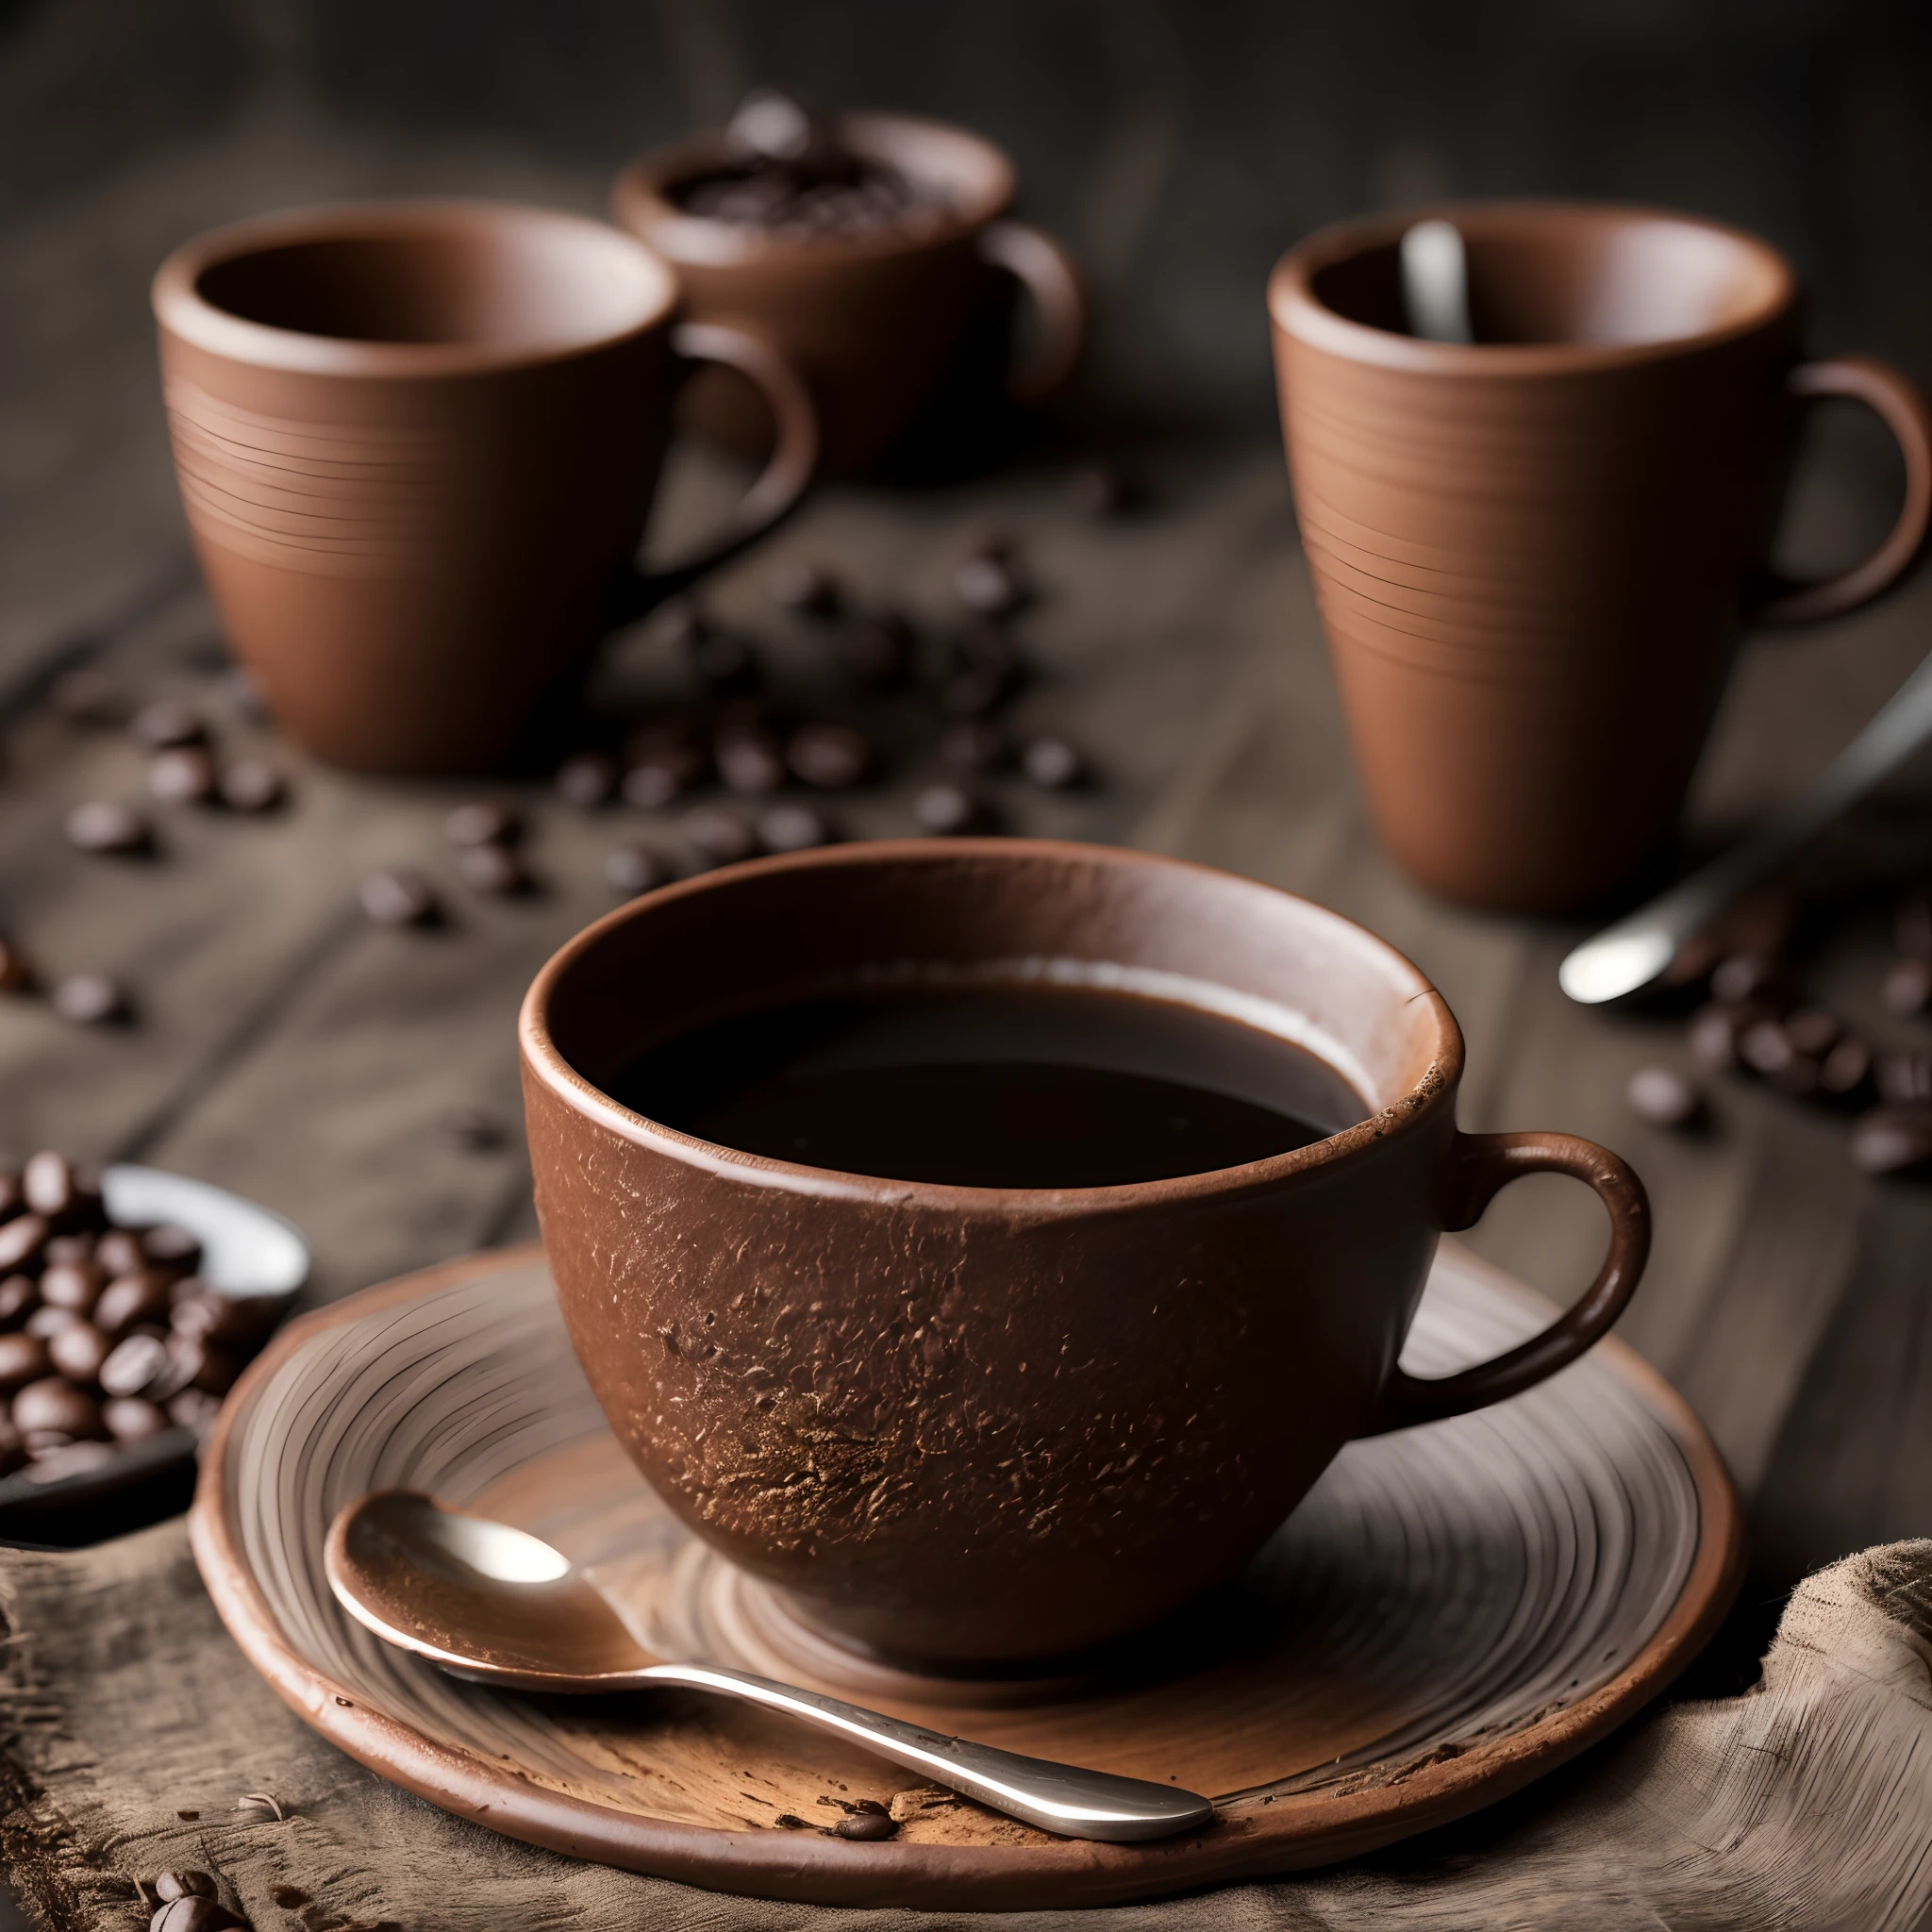 жареный кофе и зерна, разложенные на ткани с чашкой глиняного кофе, тонкий дым, снято 35-мм сверхреалистичной макрокамерой HDR